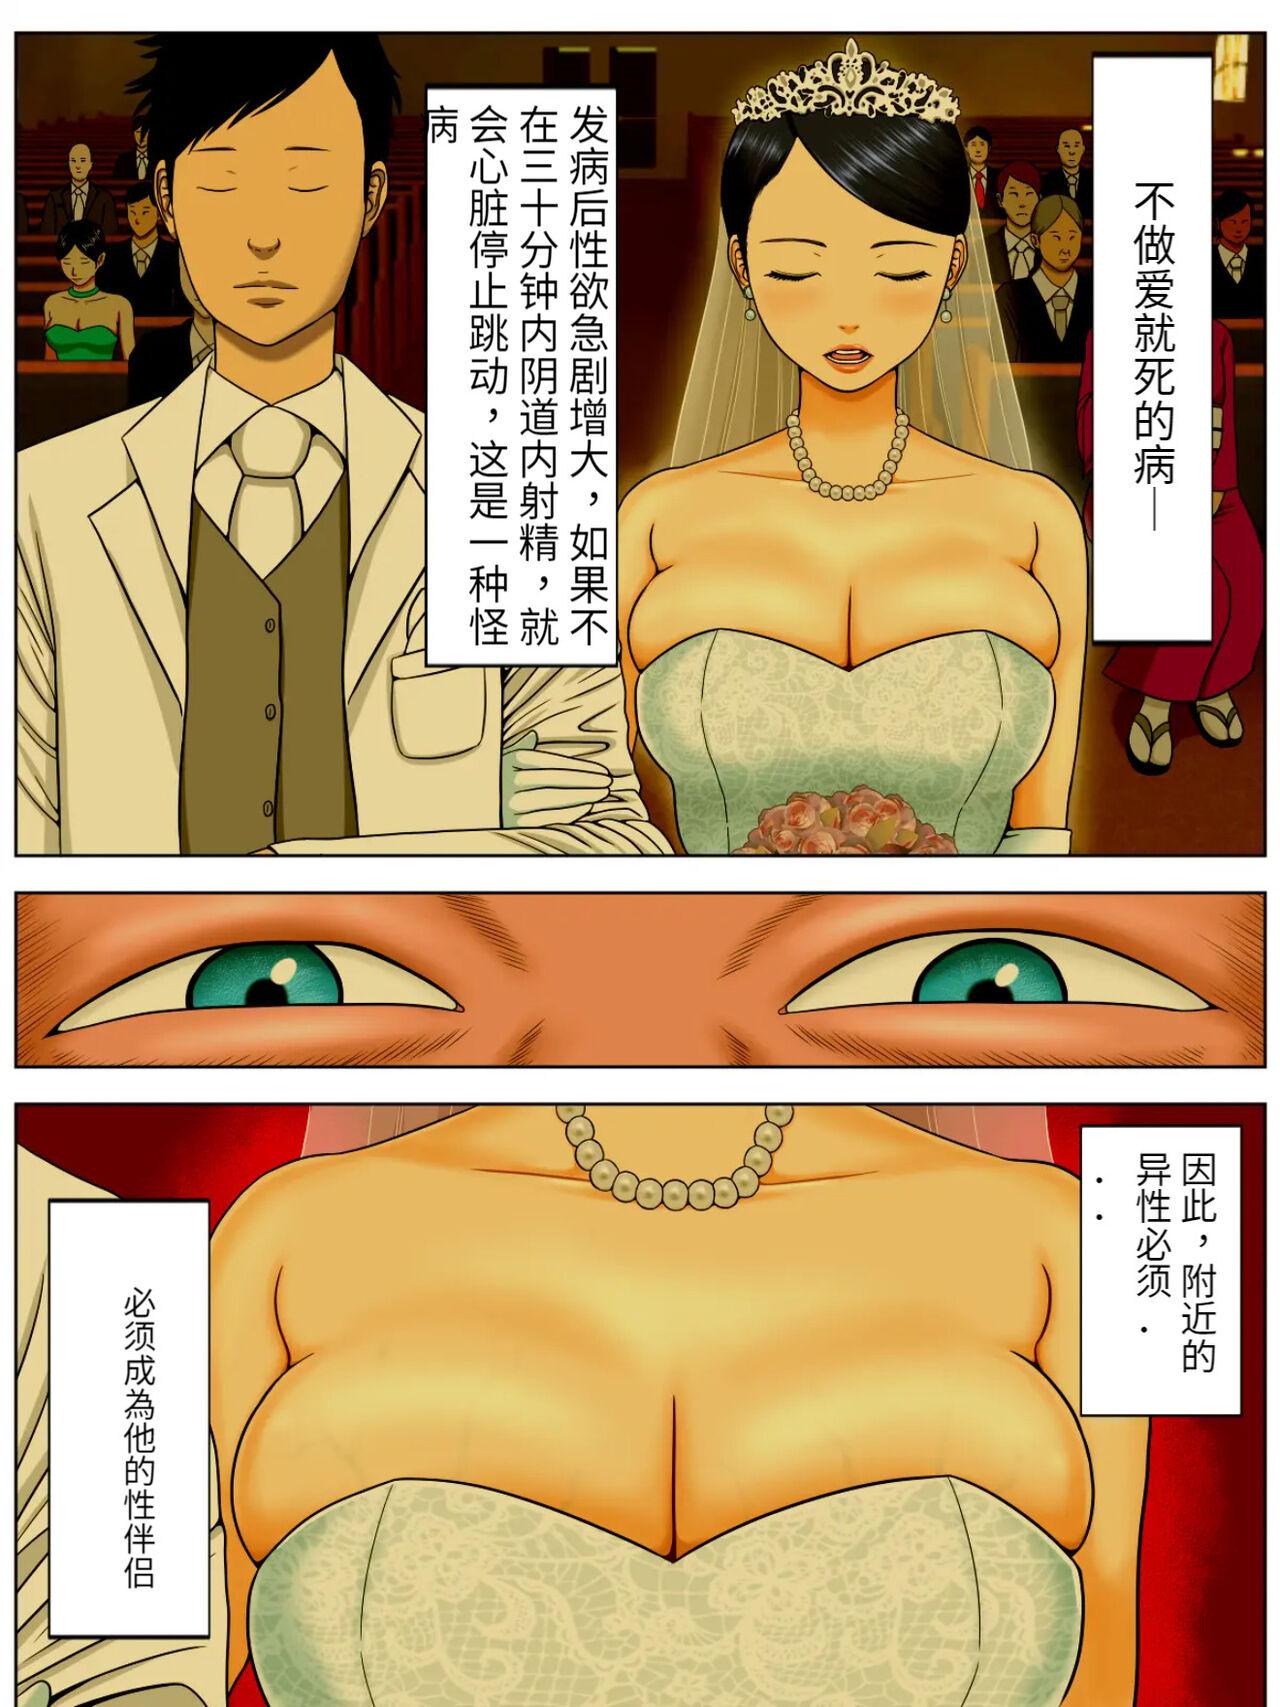 Crazy Sex Shinai to Shinu Yamai 3 - Original Calle - Page 2